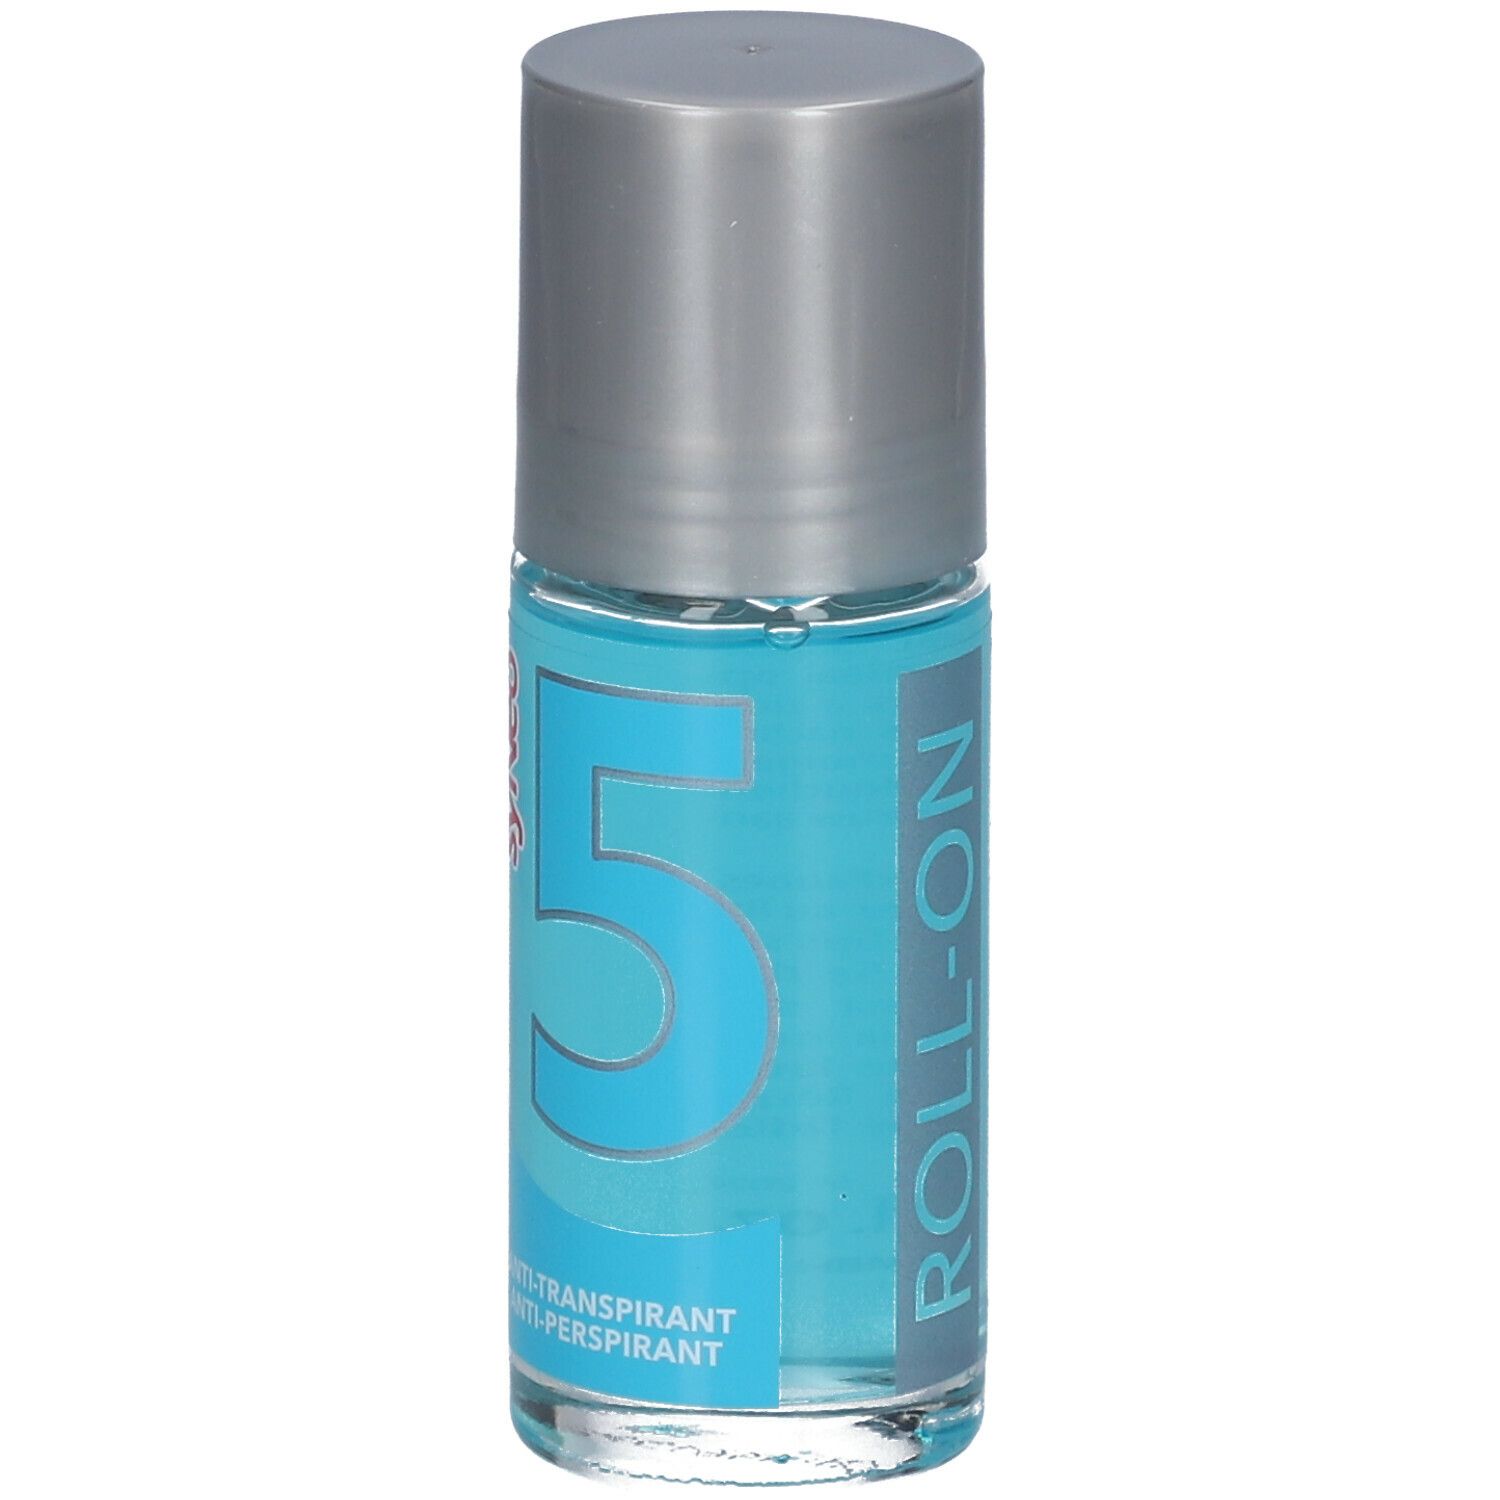 Syneo 5 Roll-On Deodorant